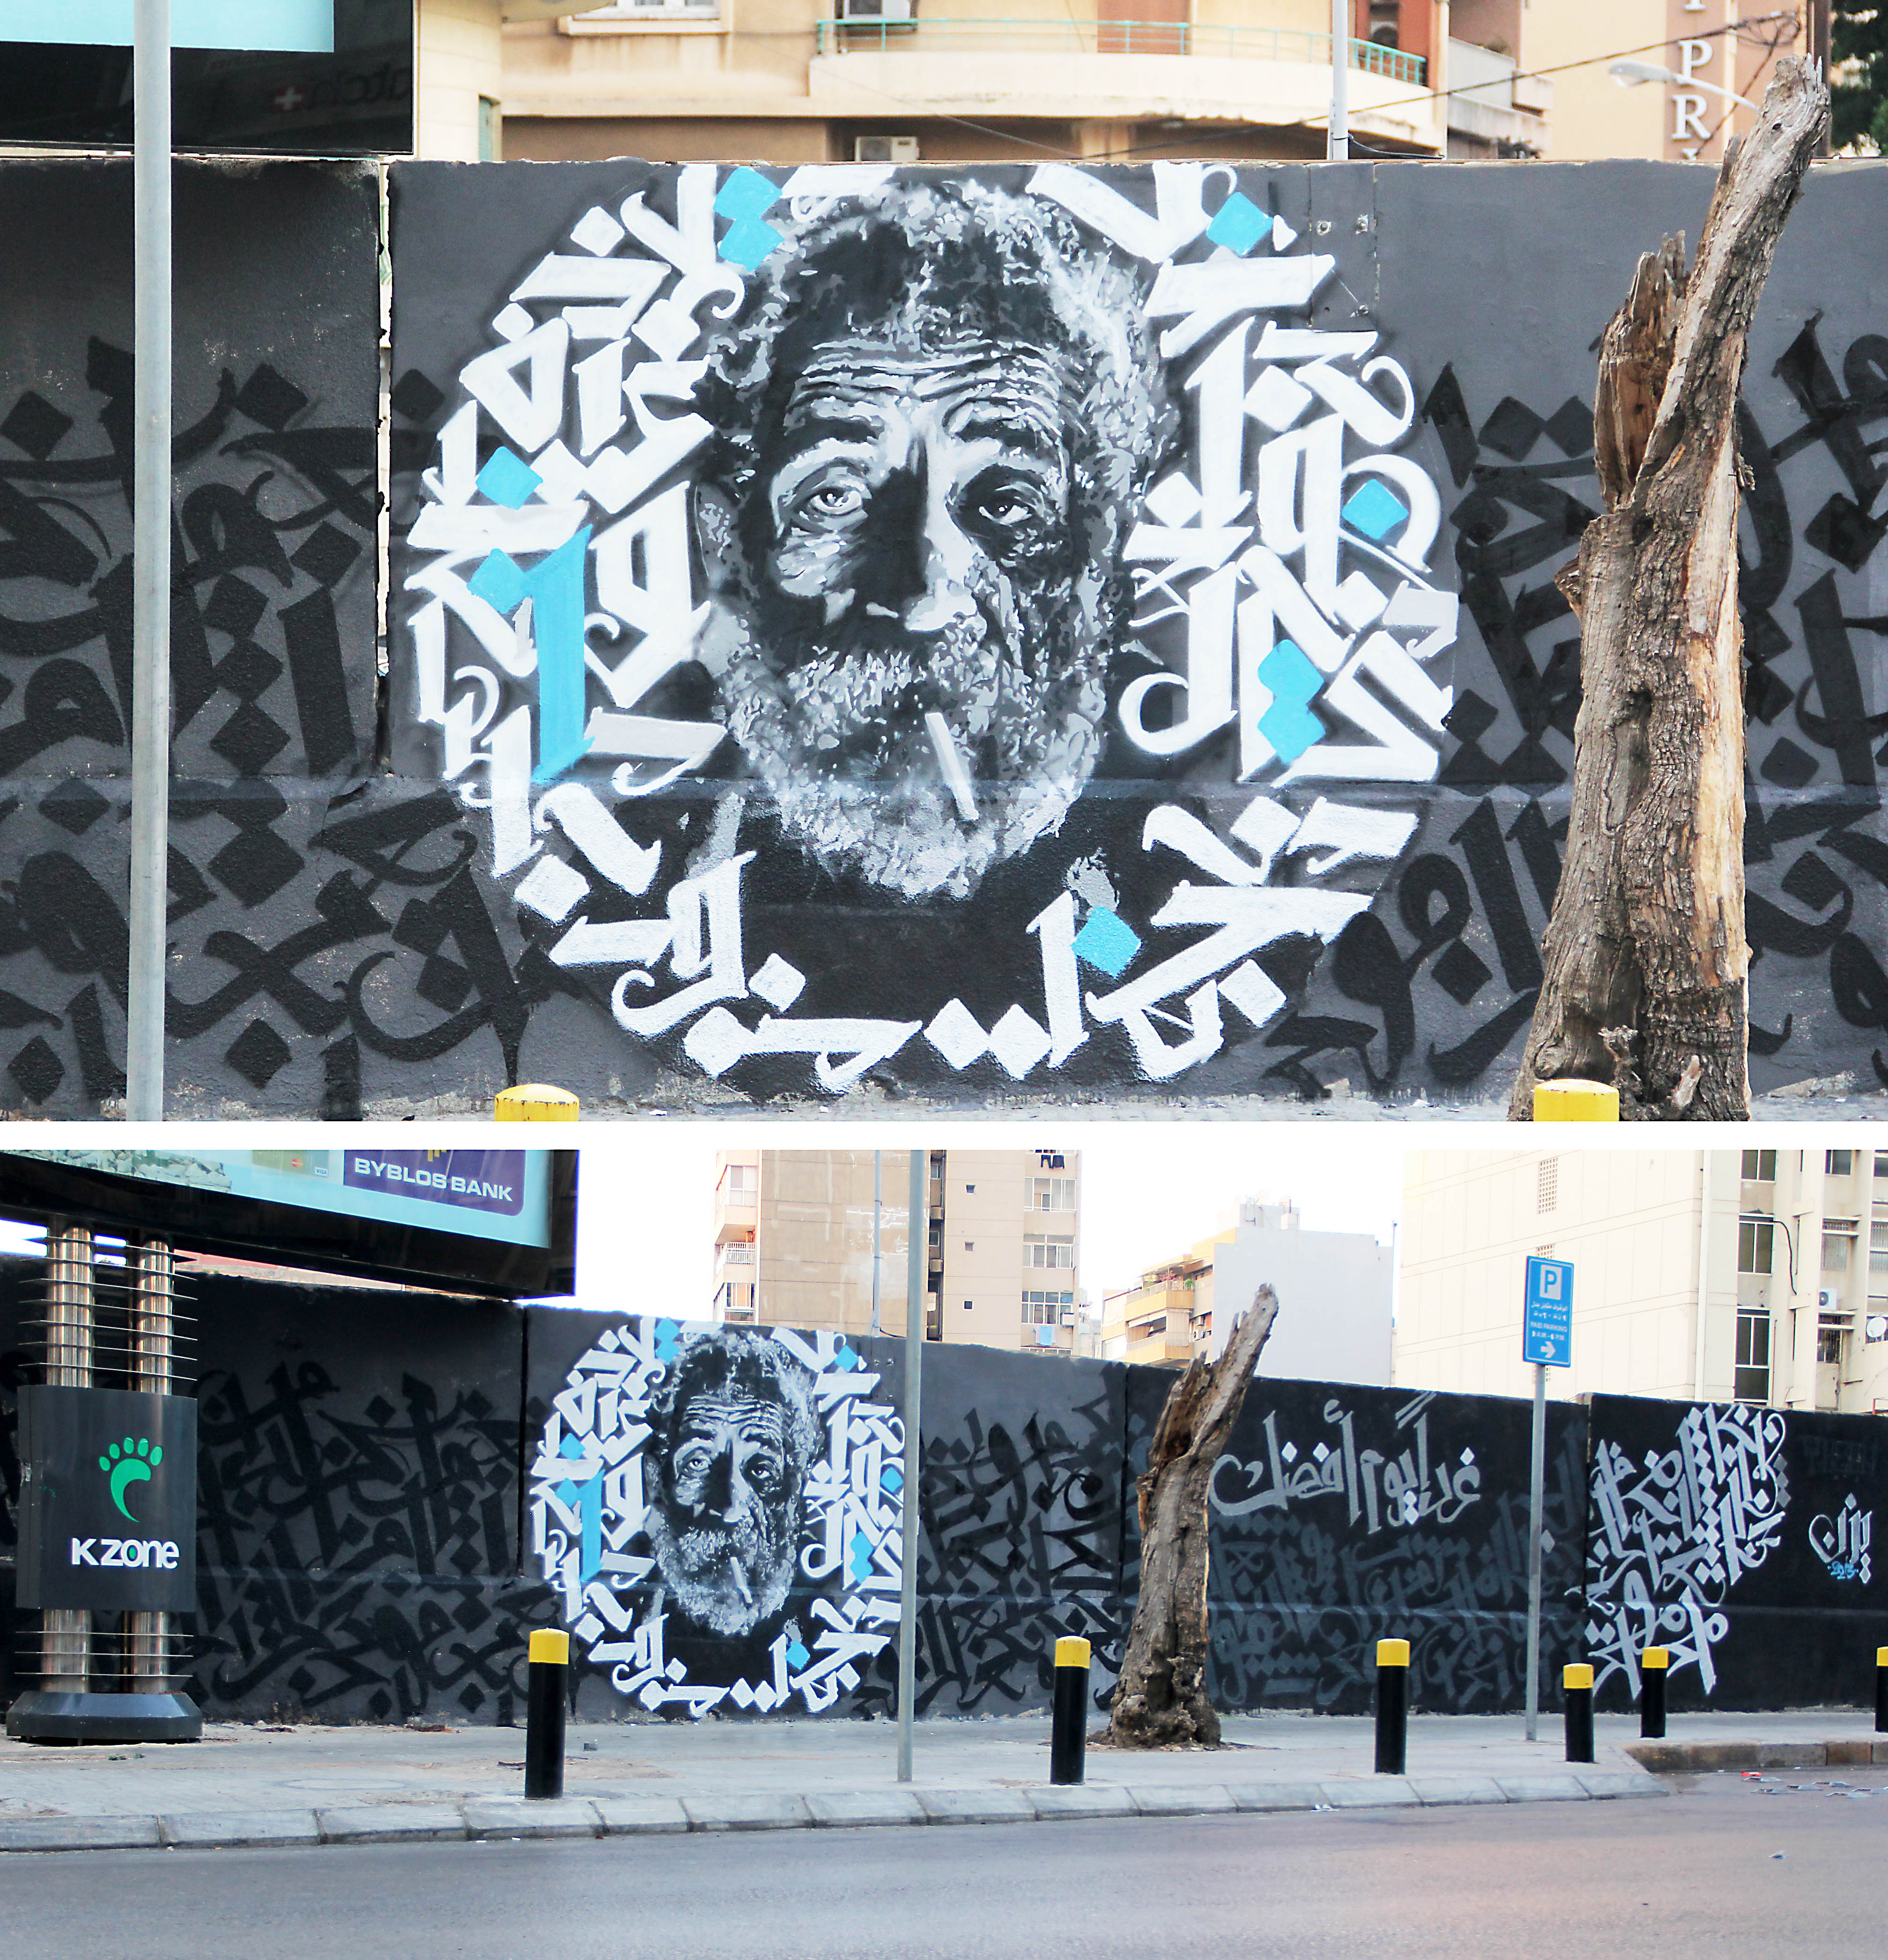 رسم جداري لوجه علي عبدالله، رجل مشرد عاش في حي الحمرة. مات من البرد. تصوير: يزن حلواني.